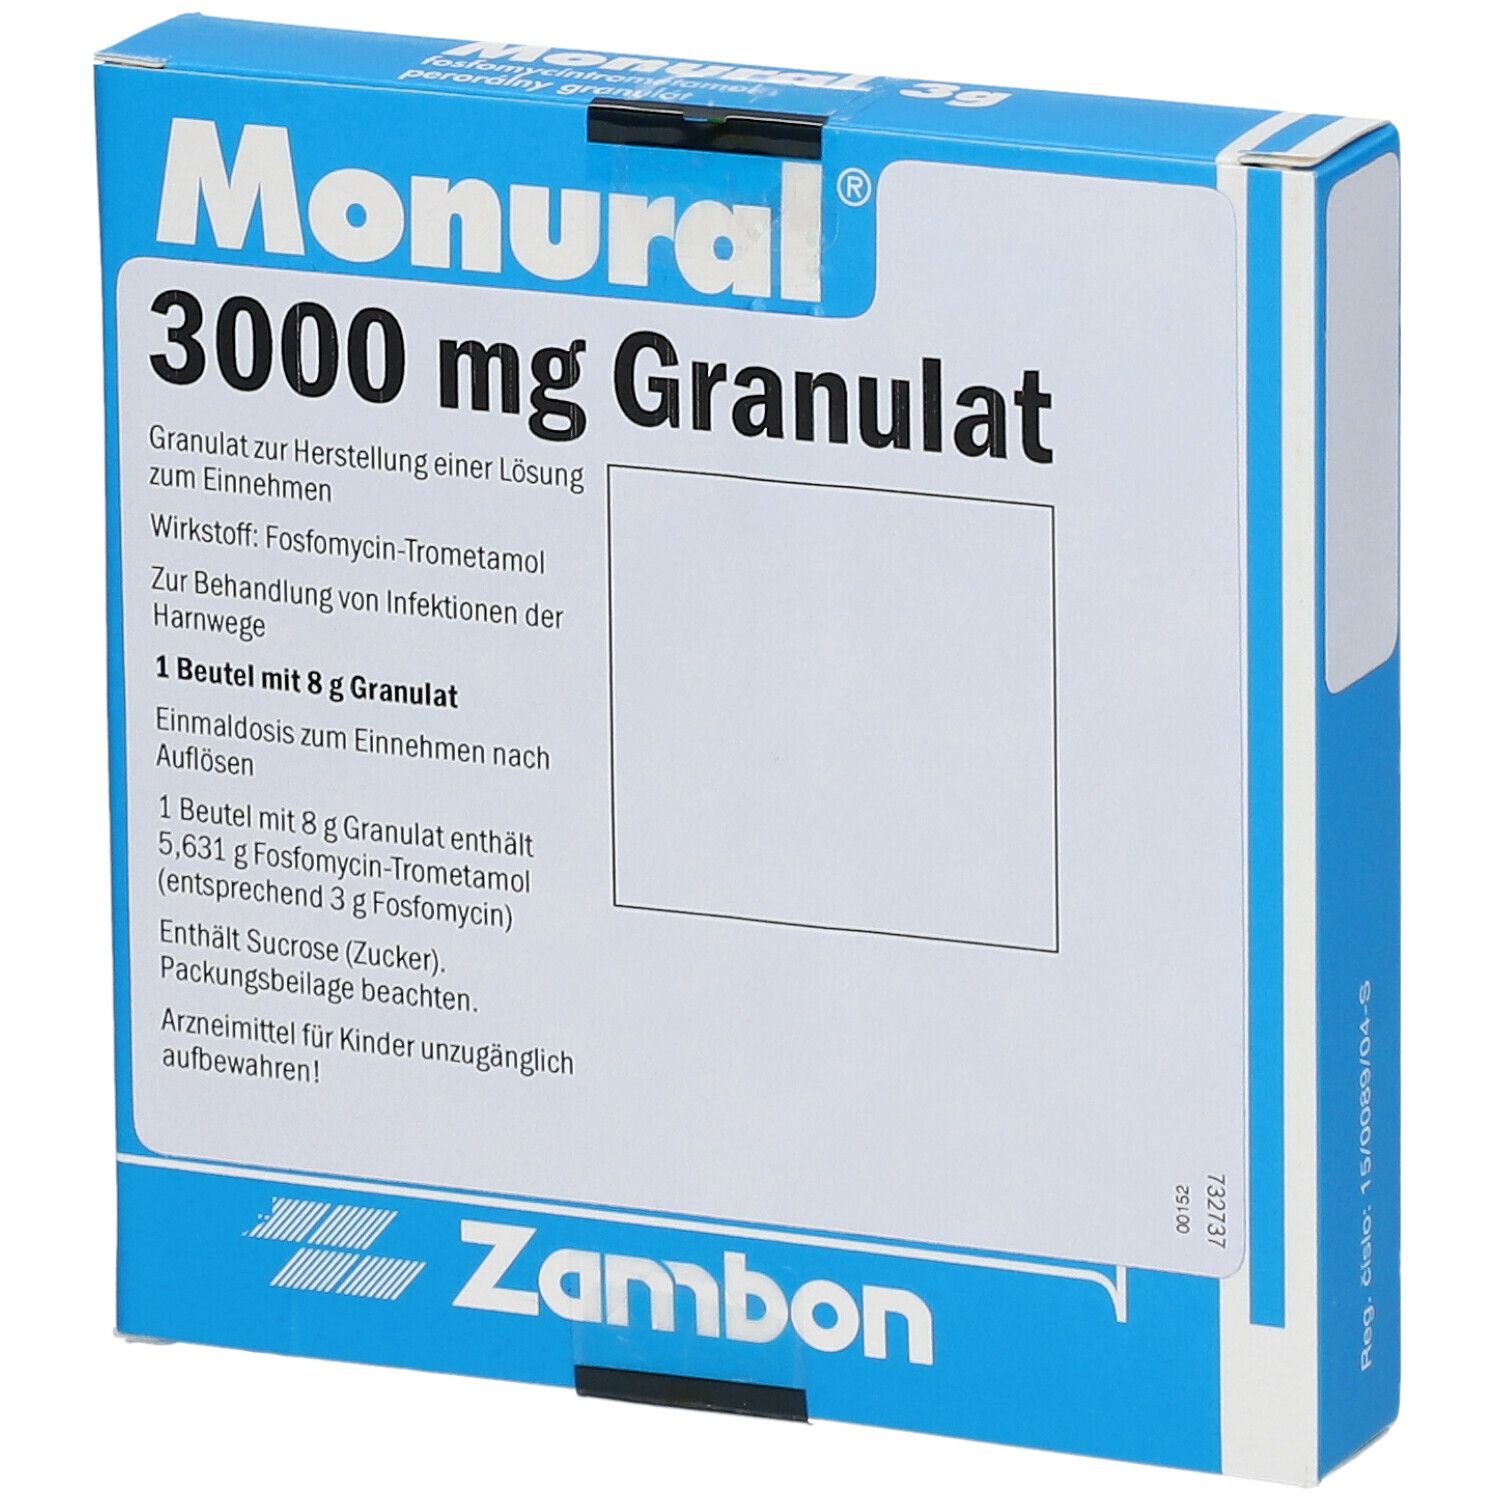 Wie schnell wirkt monuril 3000 granulat